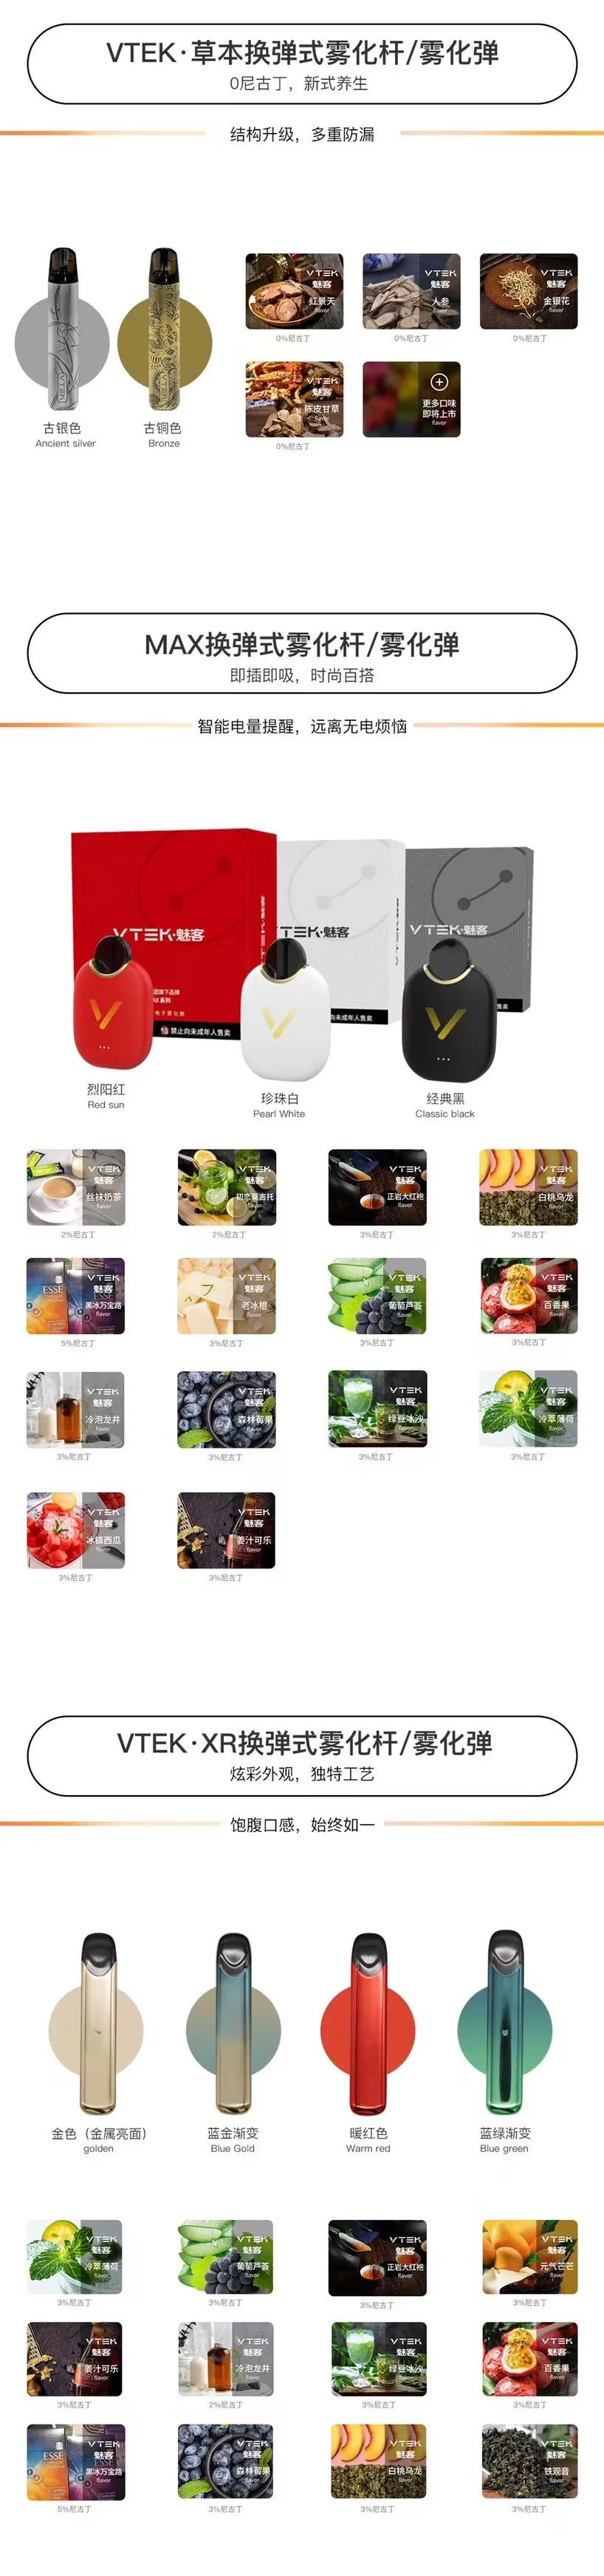 本期推荐：电子烟品牌YGREEN--深圳市源格林科技有限公司